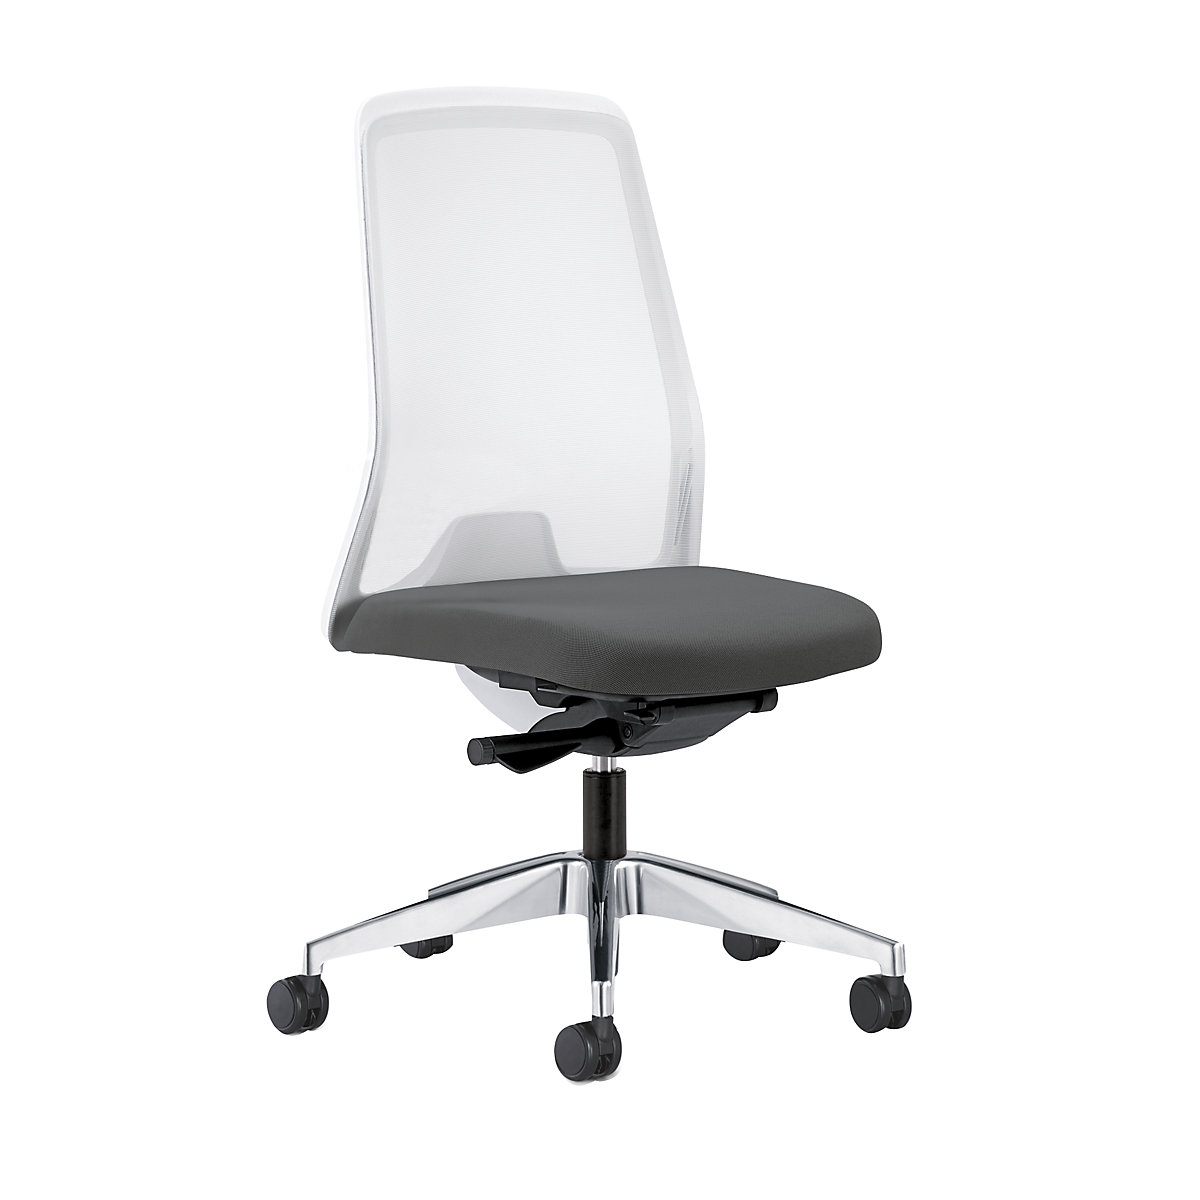 Udobna okretna stolica EVERY, mrežasti naslon za leđa u bijeloj boji – interstuhl, polirano postolje, s mekanim kotačima, u željeznosivoj boji, dubina sjedala 430 mm-2